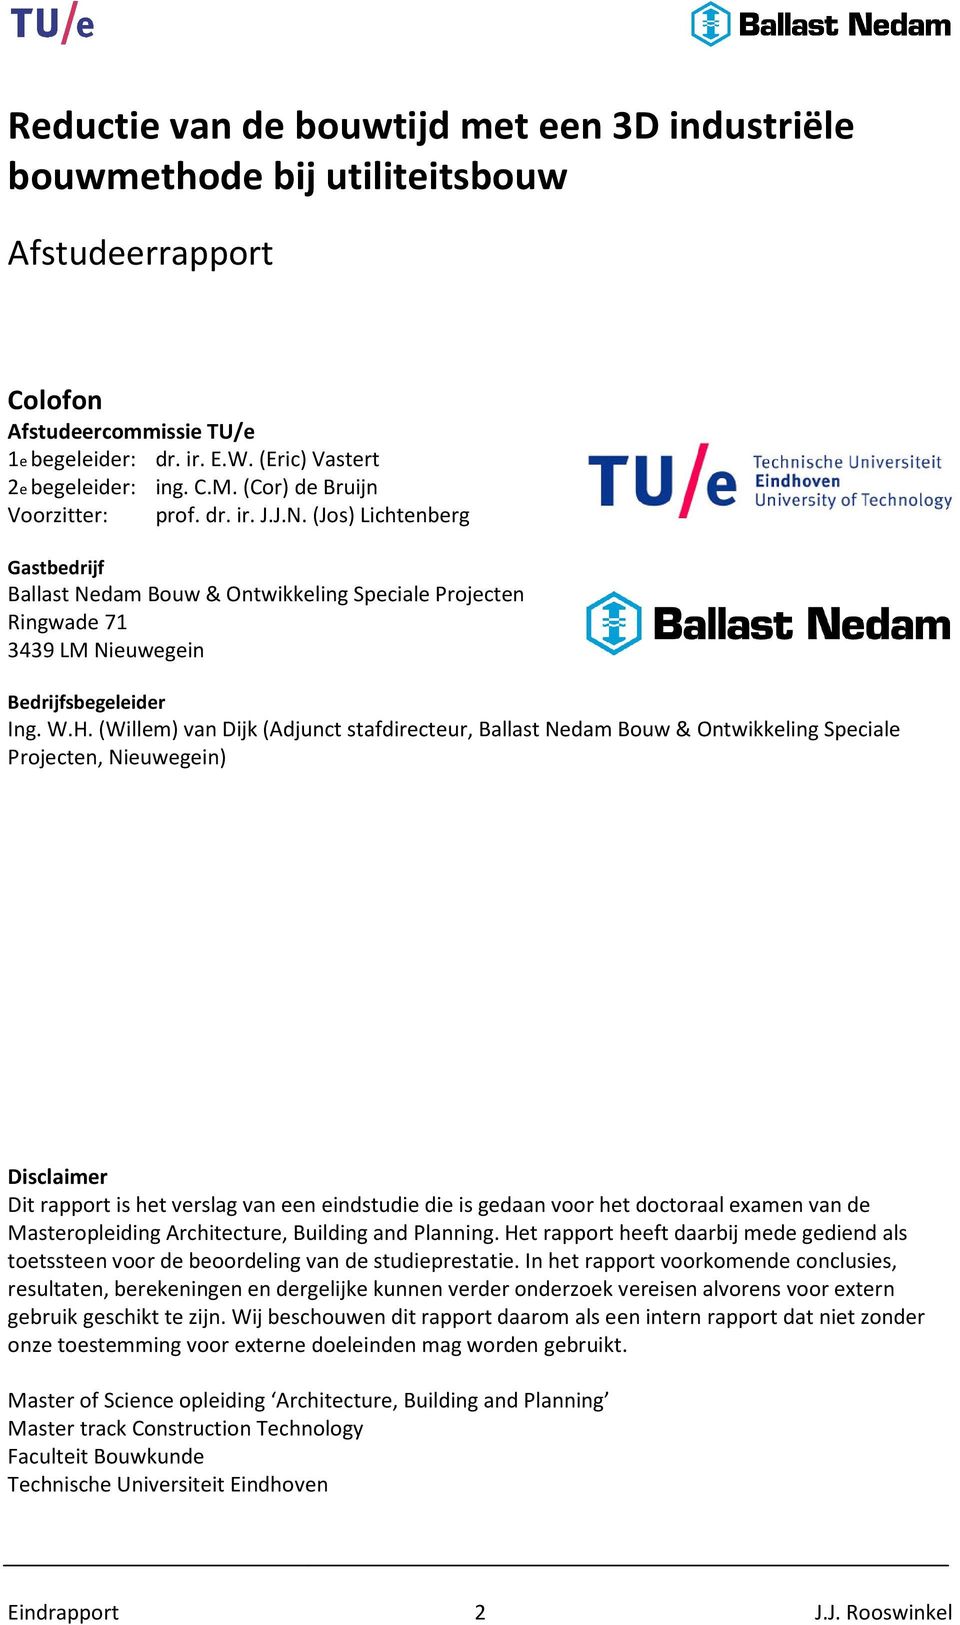 (Willem) van Dijk (Adjunct stafdirecteur, Ballast Nedam Bouw & Ontwikkeling Speciale Projecten, Nieuwegein) Disclaimer Dit rapport is het verslag van een eindstudie die is gedaan voor het doctoraal